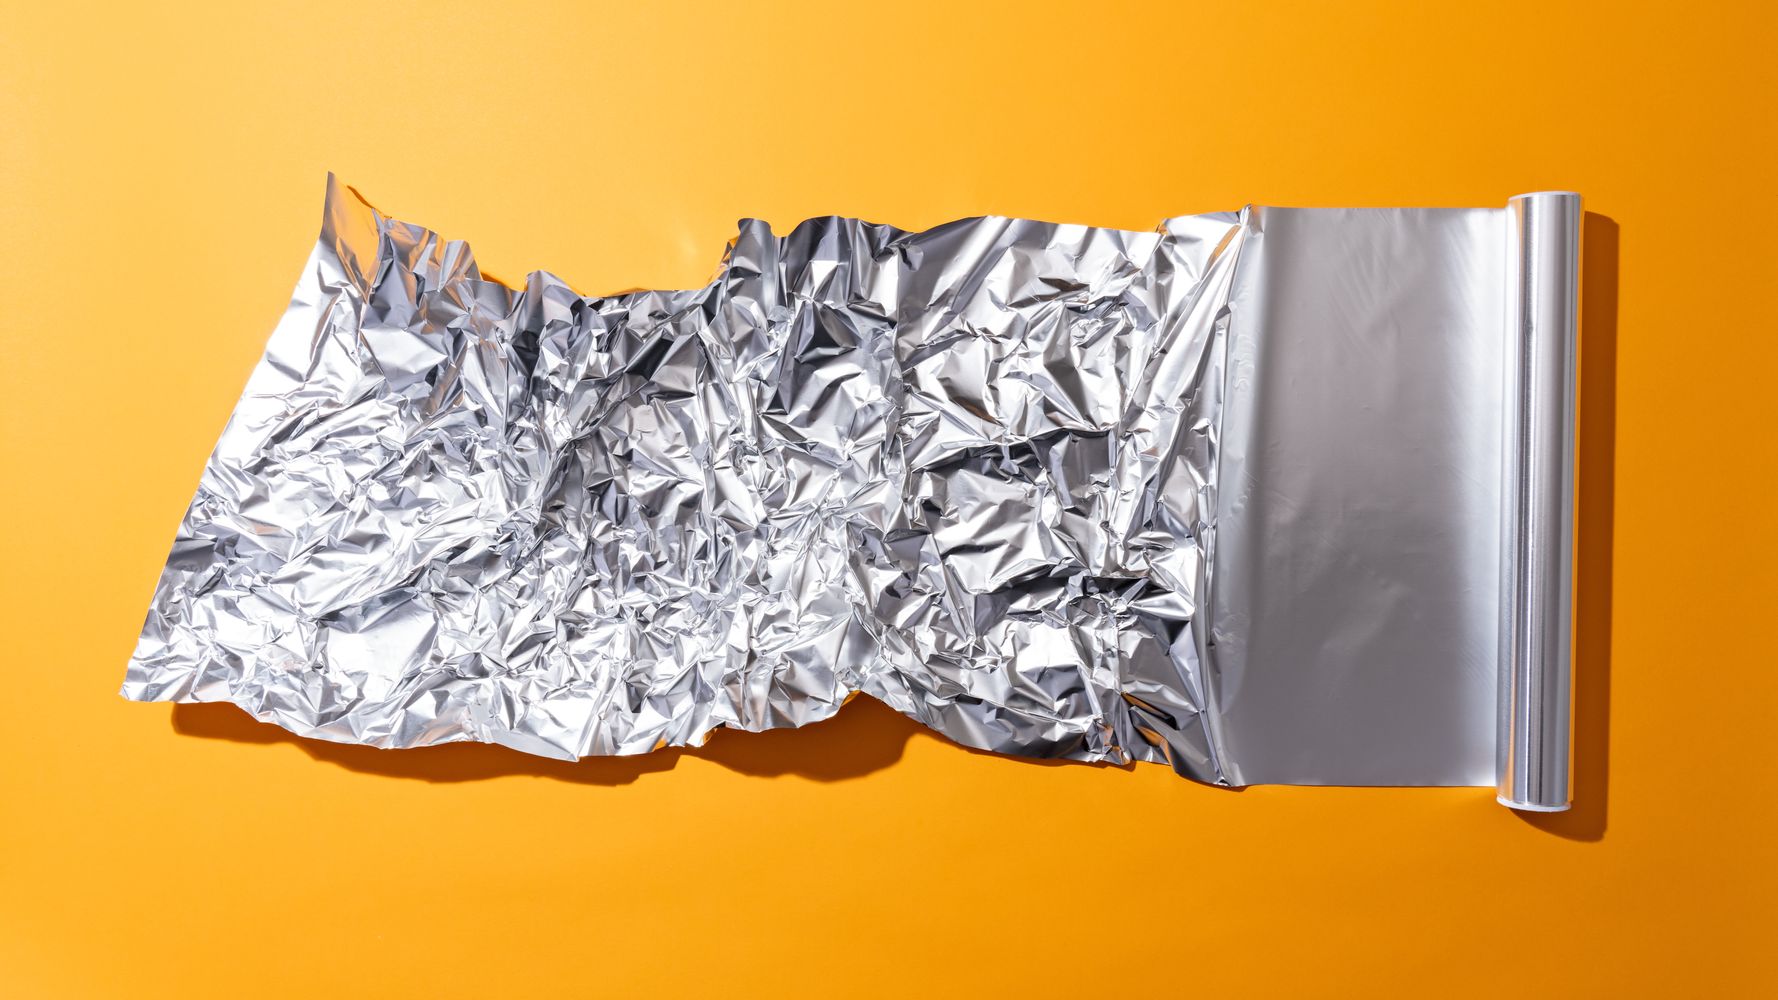 Parchment Paper vs. Aluminum Foil: When to Use Each